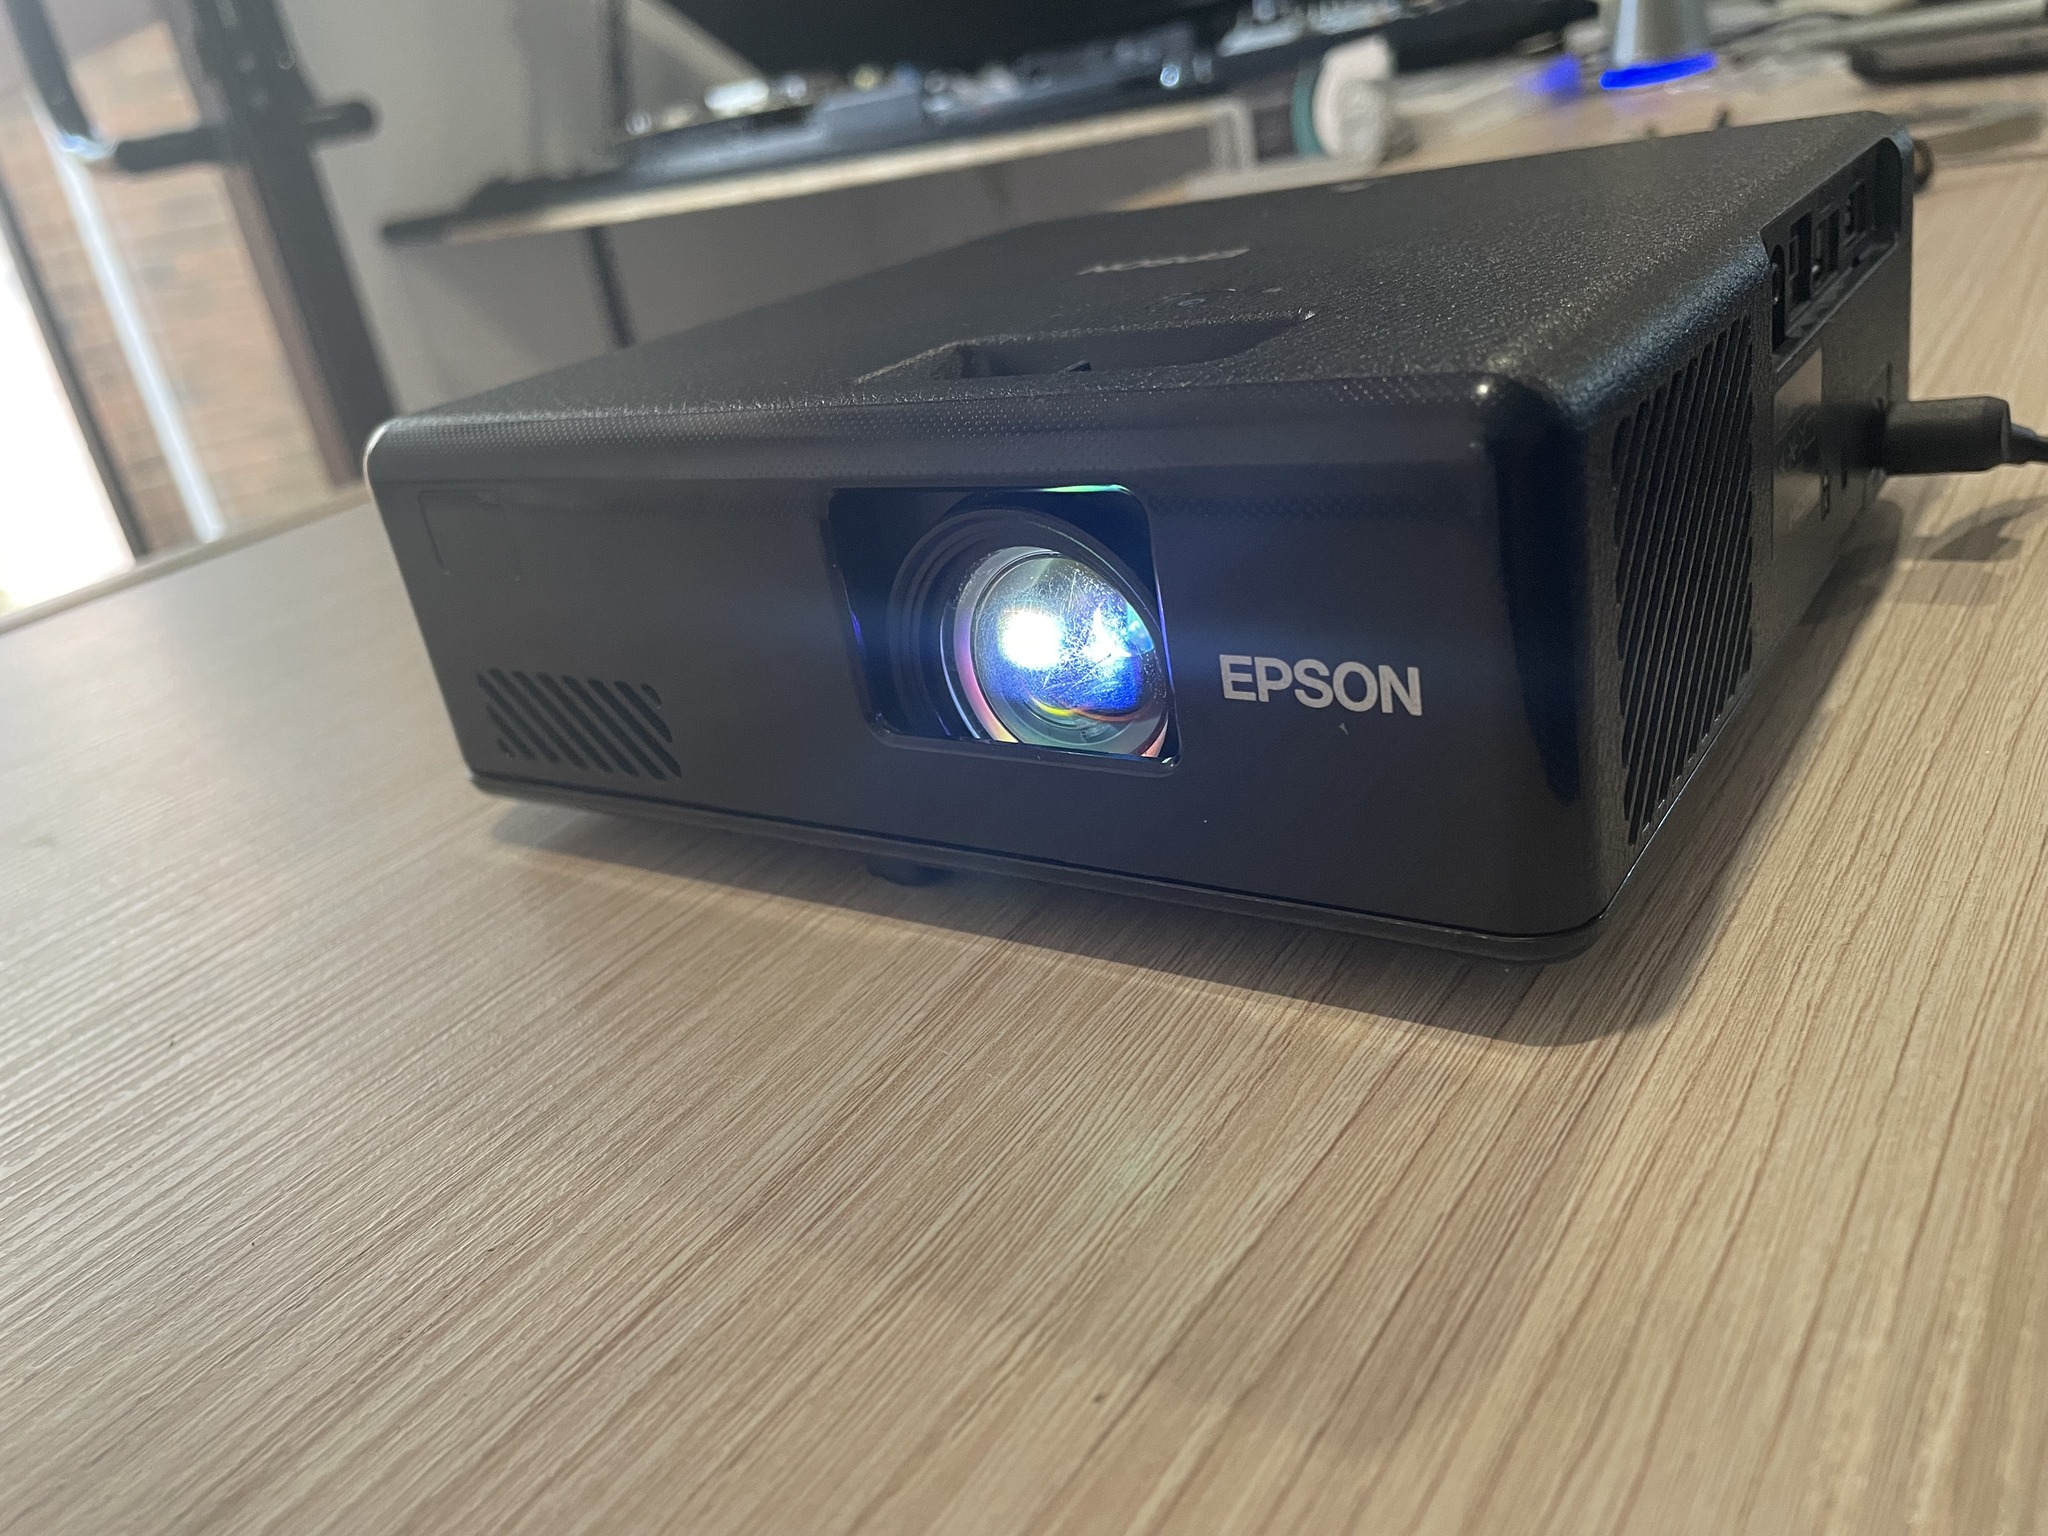 Serwis Projektora Epson